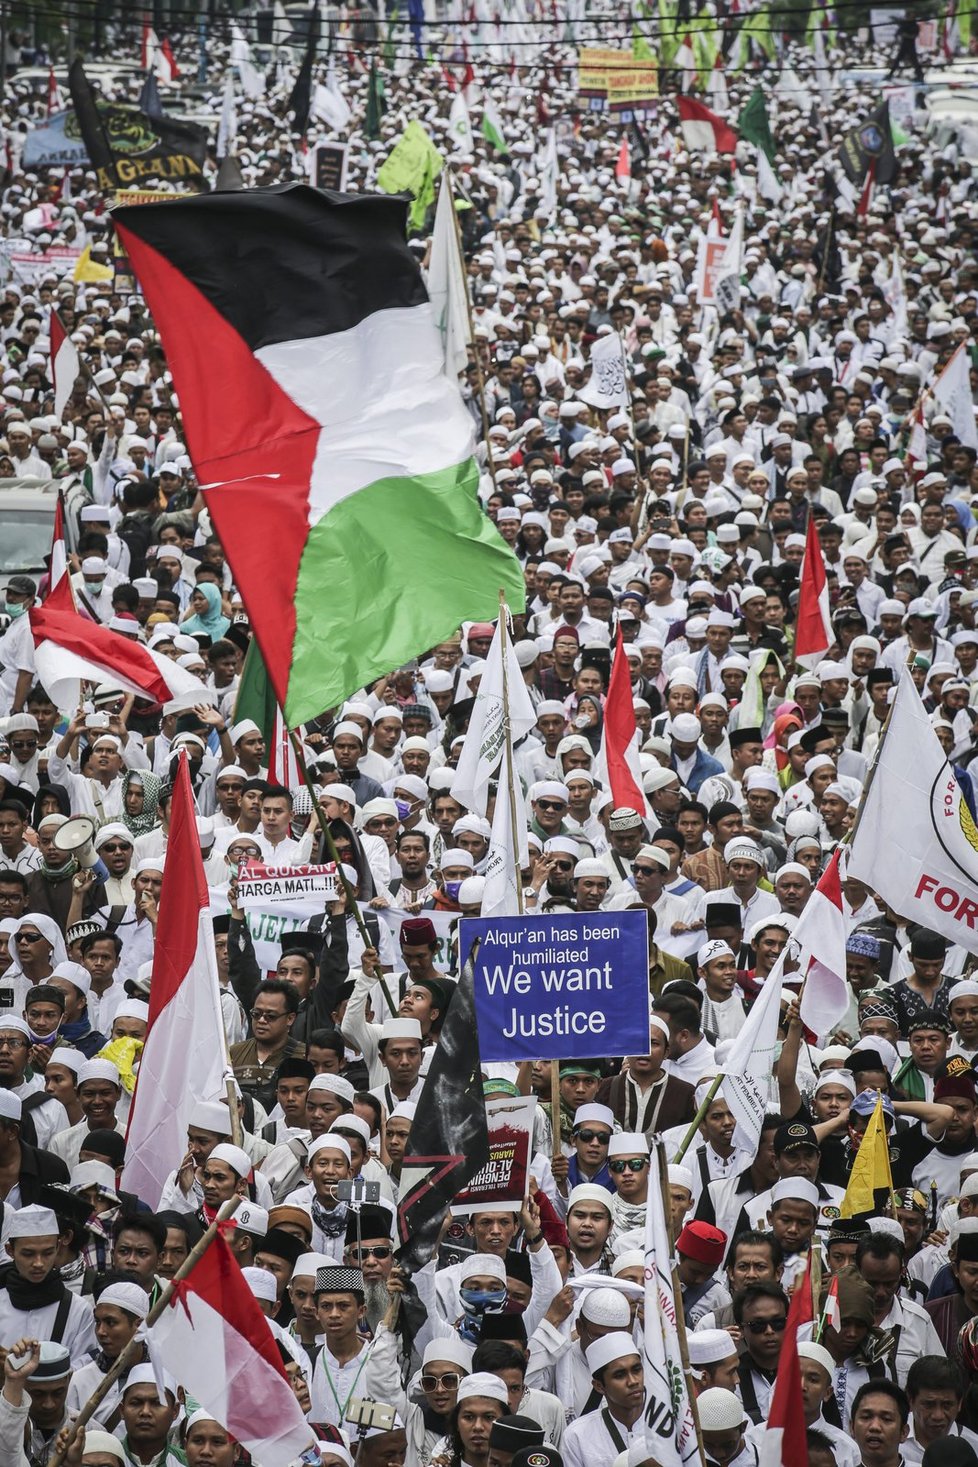 V indonéské metropoli protestují desetitisíce radikálních muslimů.